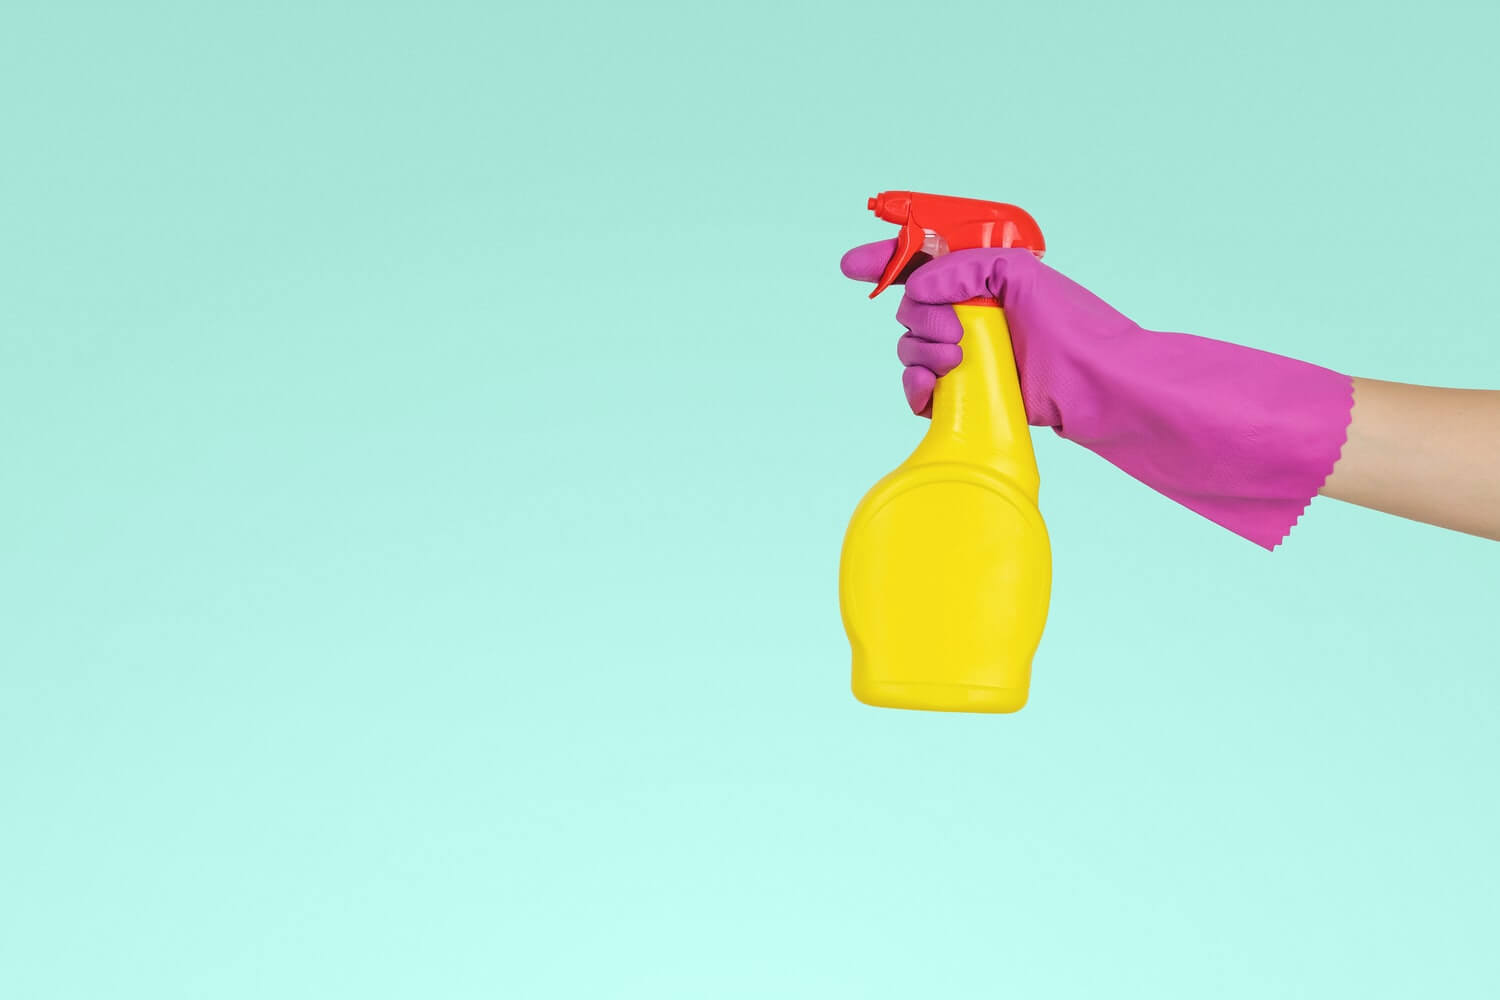 Una mano con un guante morado sujeta un spray amarillo